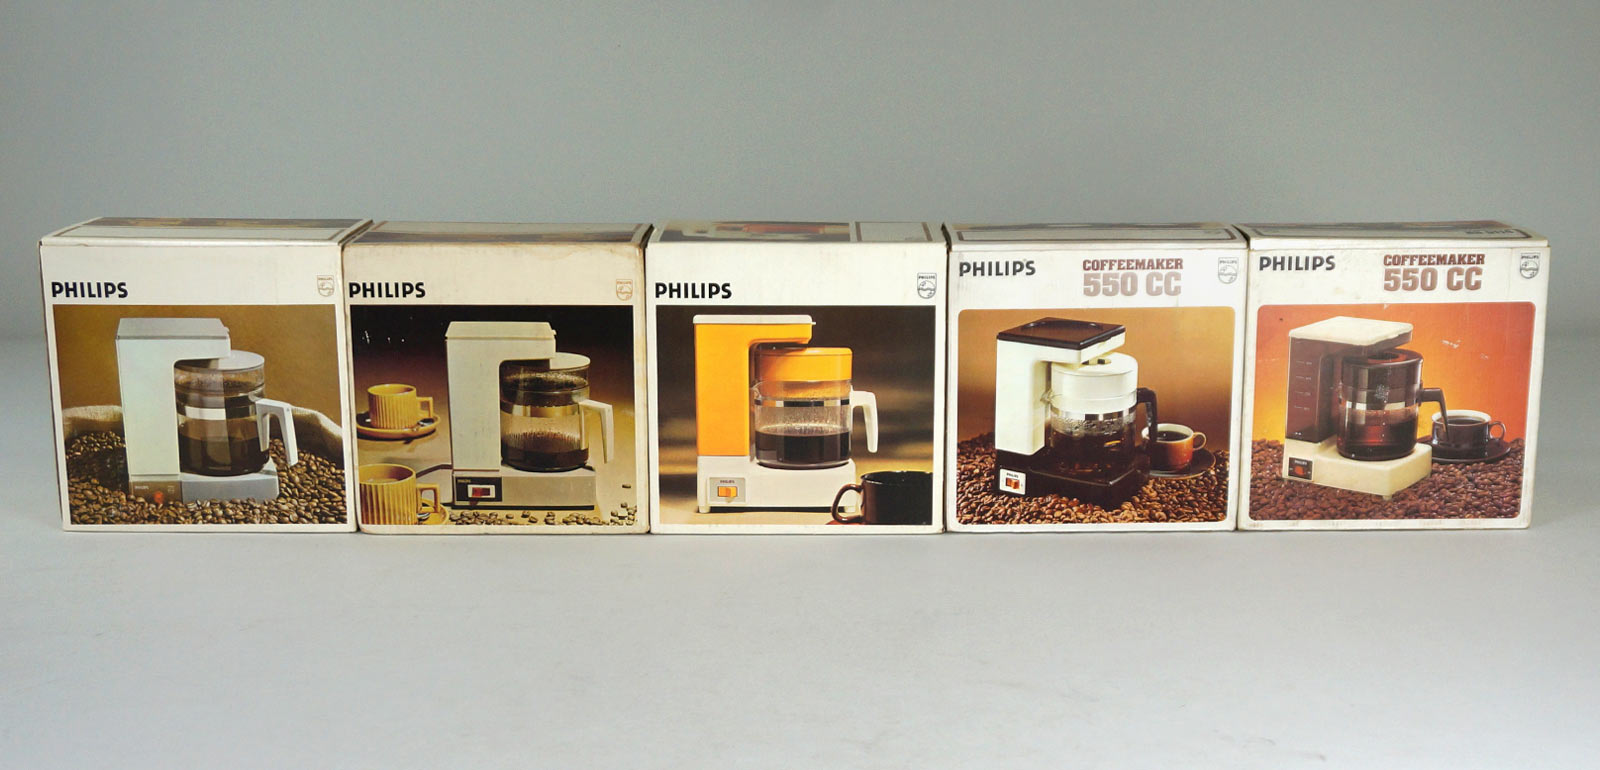 Moulinex, Philips - Batteur à main électrique Philips vintage et